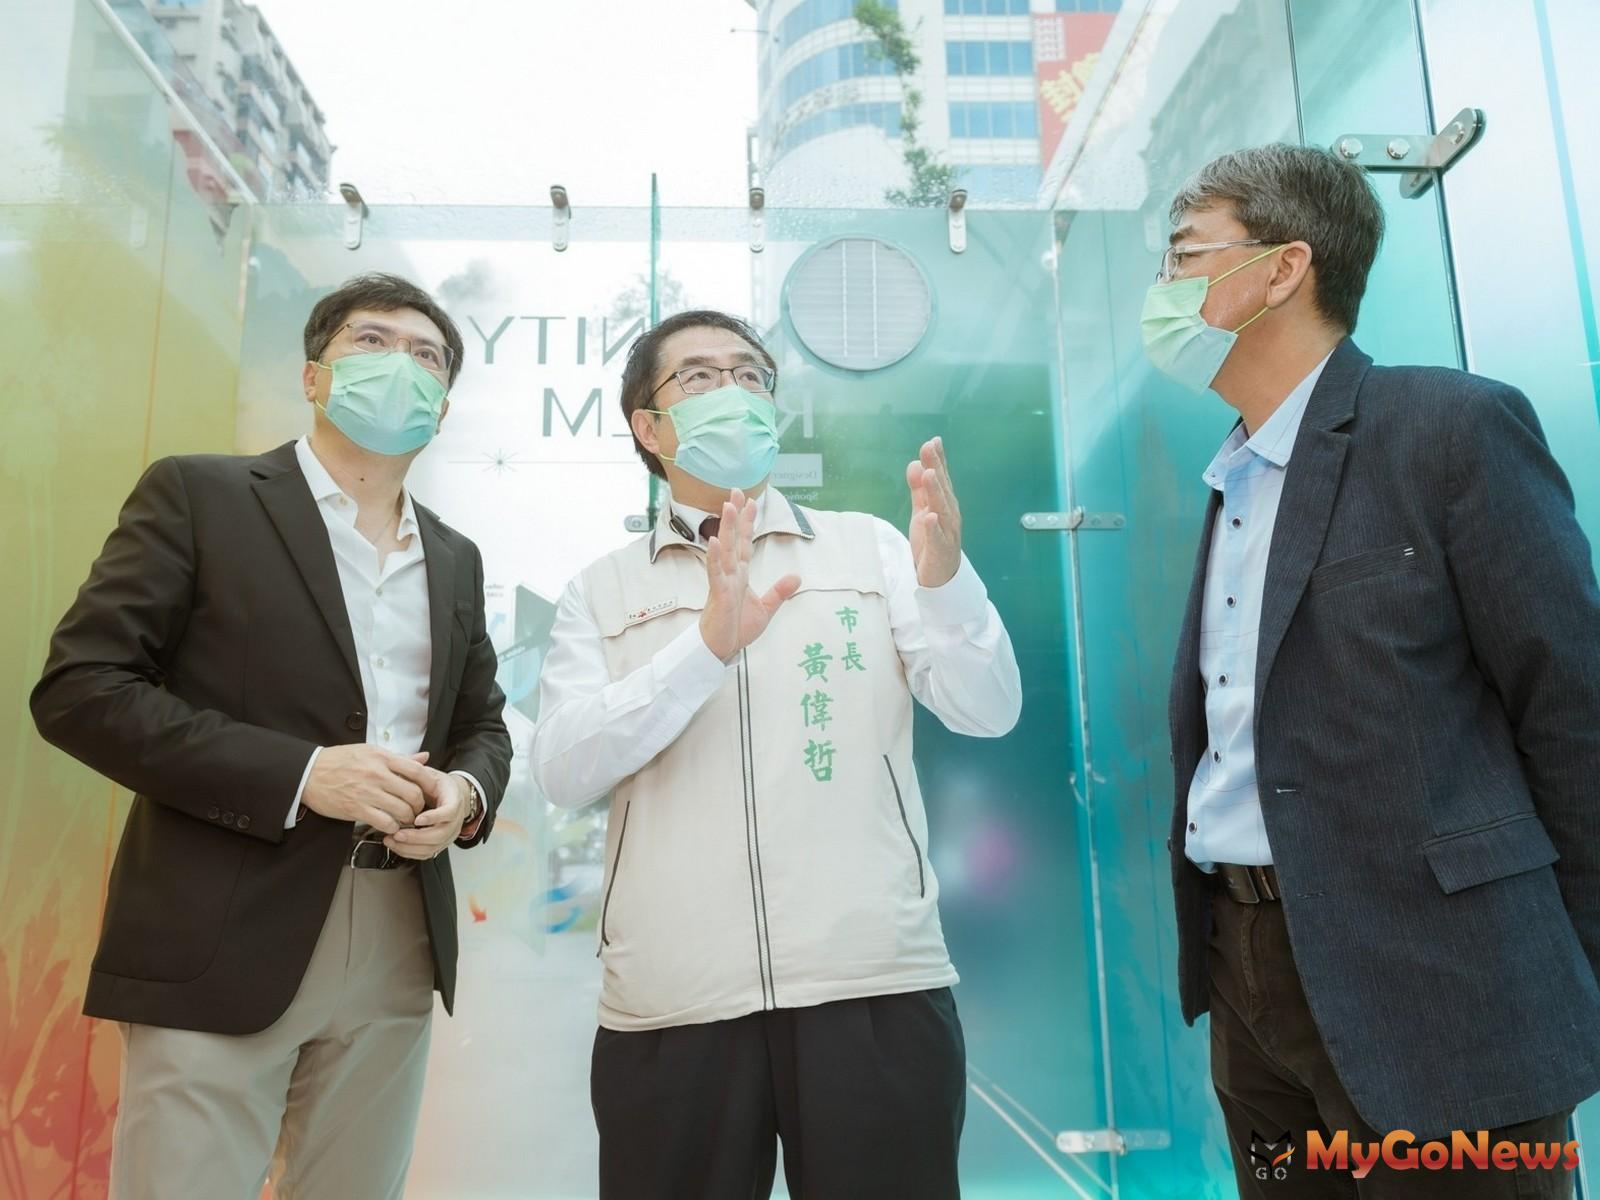 台南市長黃偉哲對於「光之國度」的設計理念及科技建材相當讚許 MyGoNews房地產新聞 市場快訊